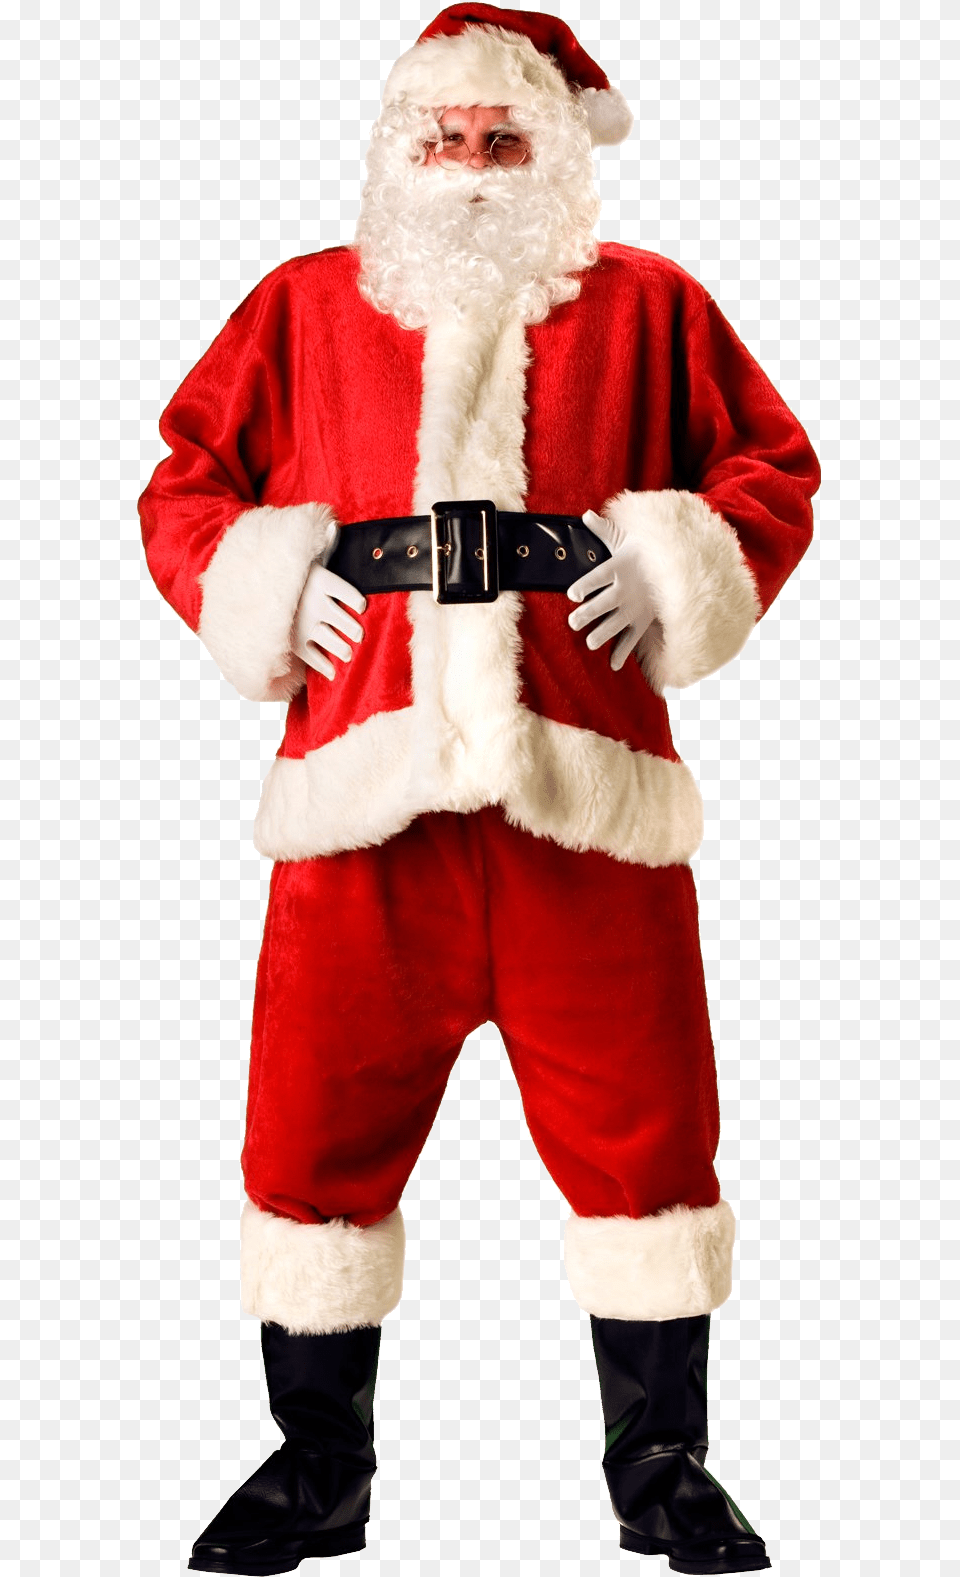 Santa Claus Transparent Santa Claus Suit, Baby, Person, Festival, Christmas Free Png